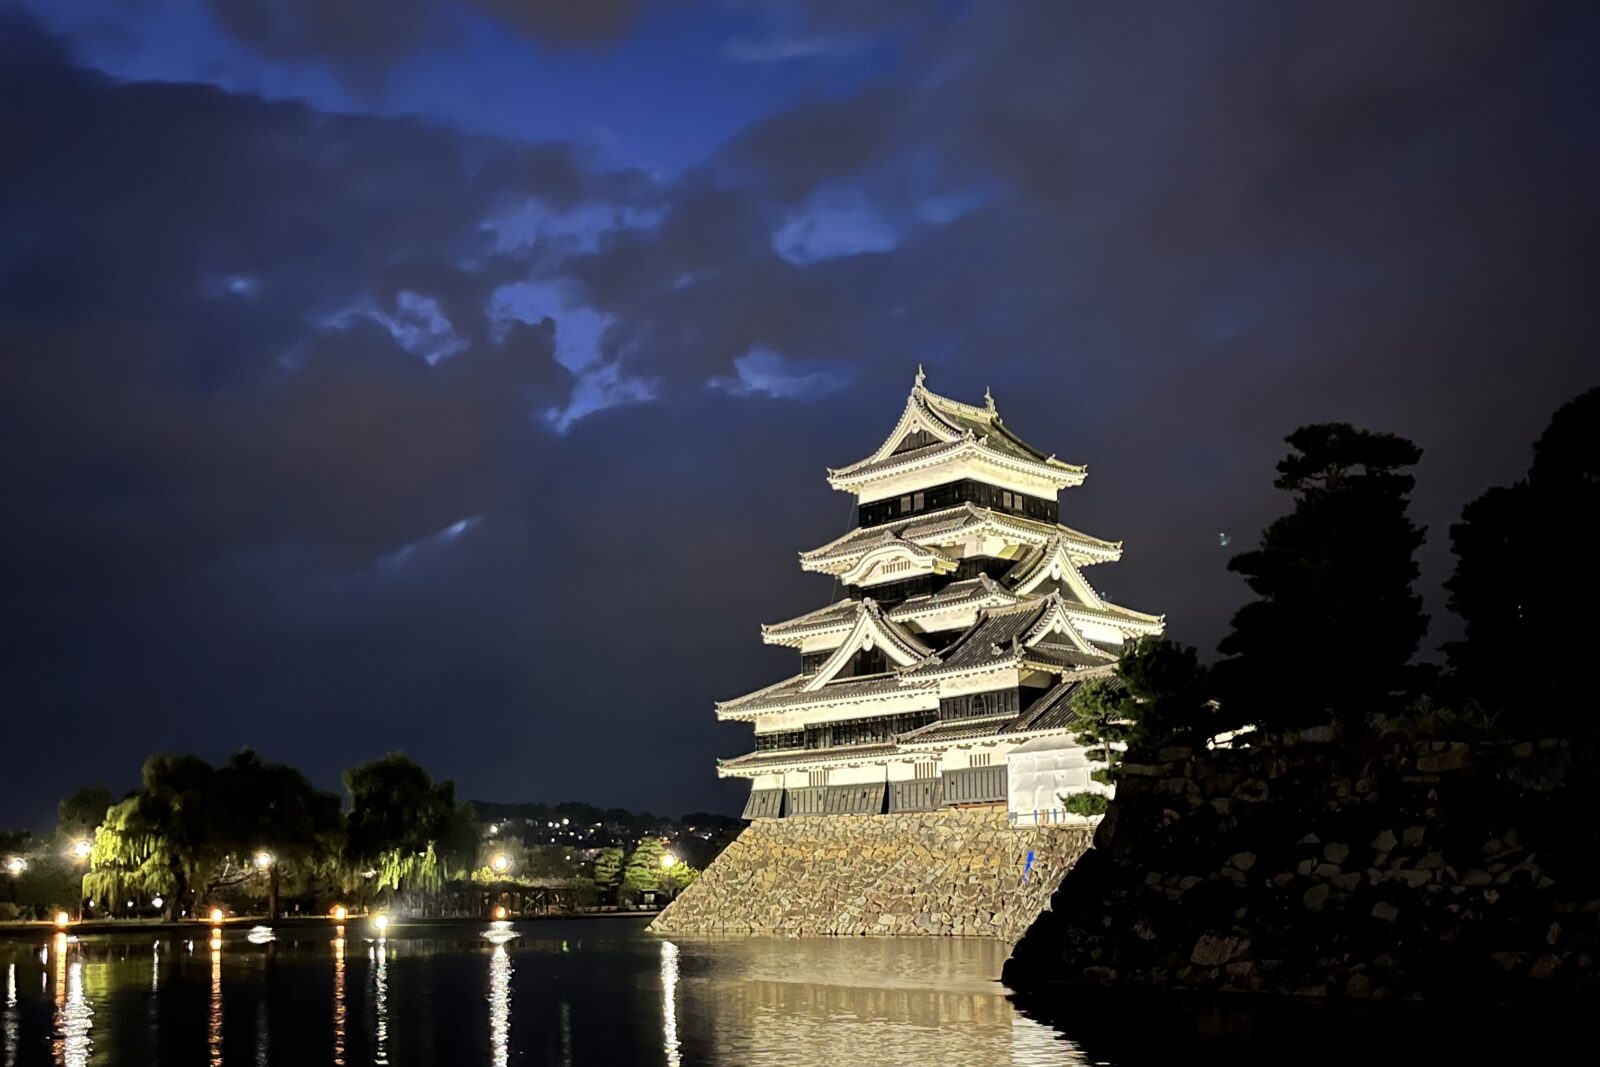 長野旅行の写真その5
松本城のライトアップ